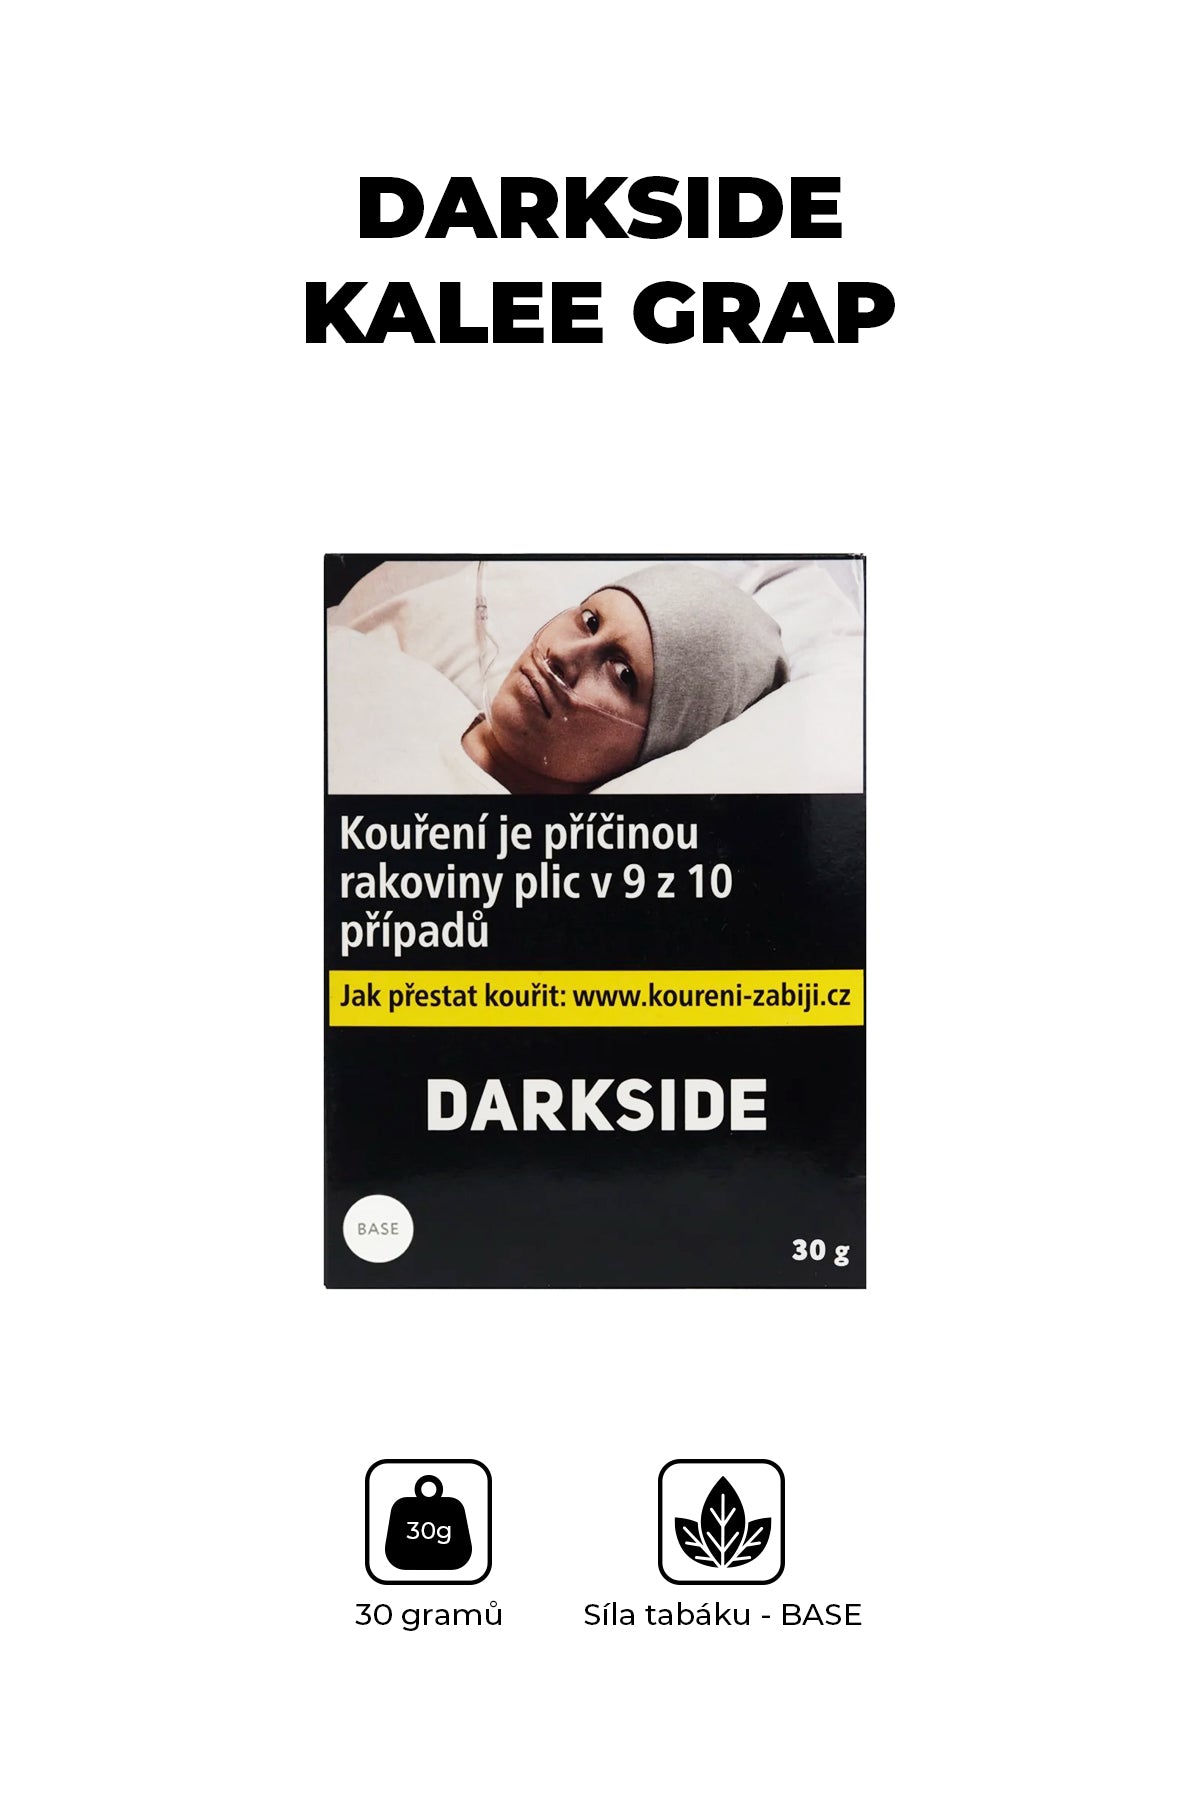 Tabák - Darkside Base 30g -  Kalee Grap